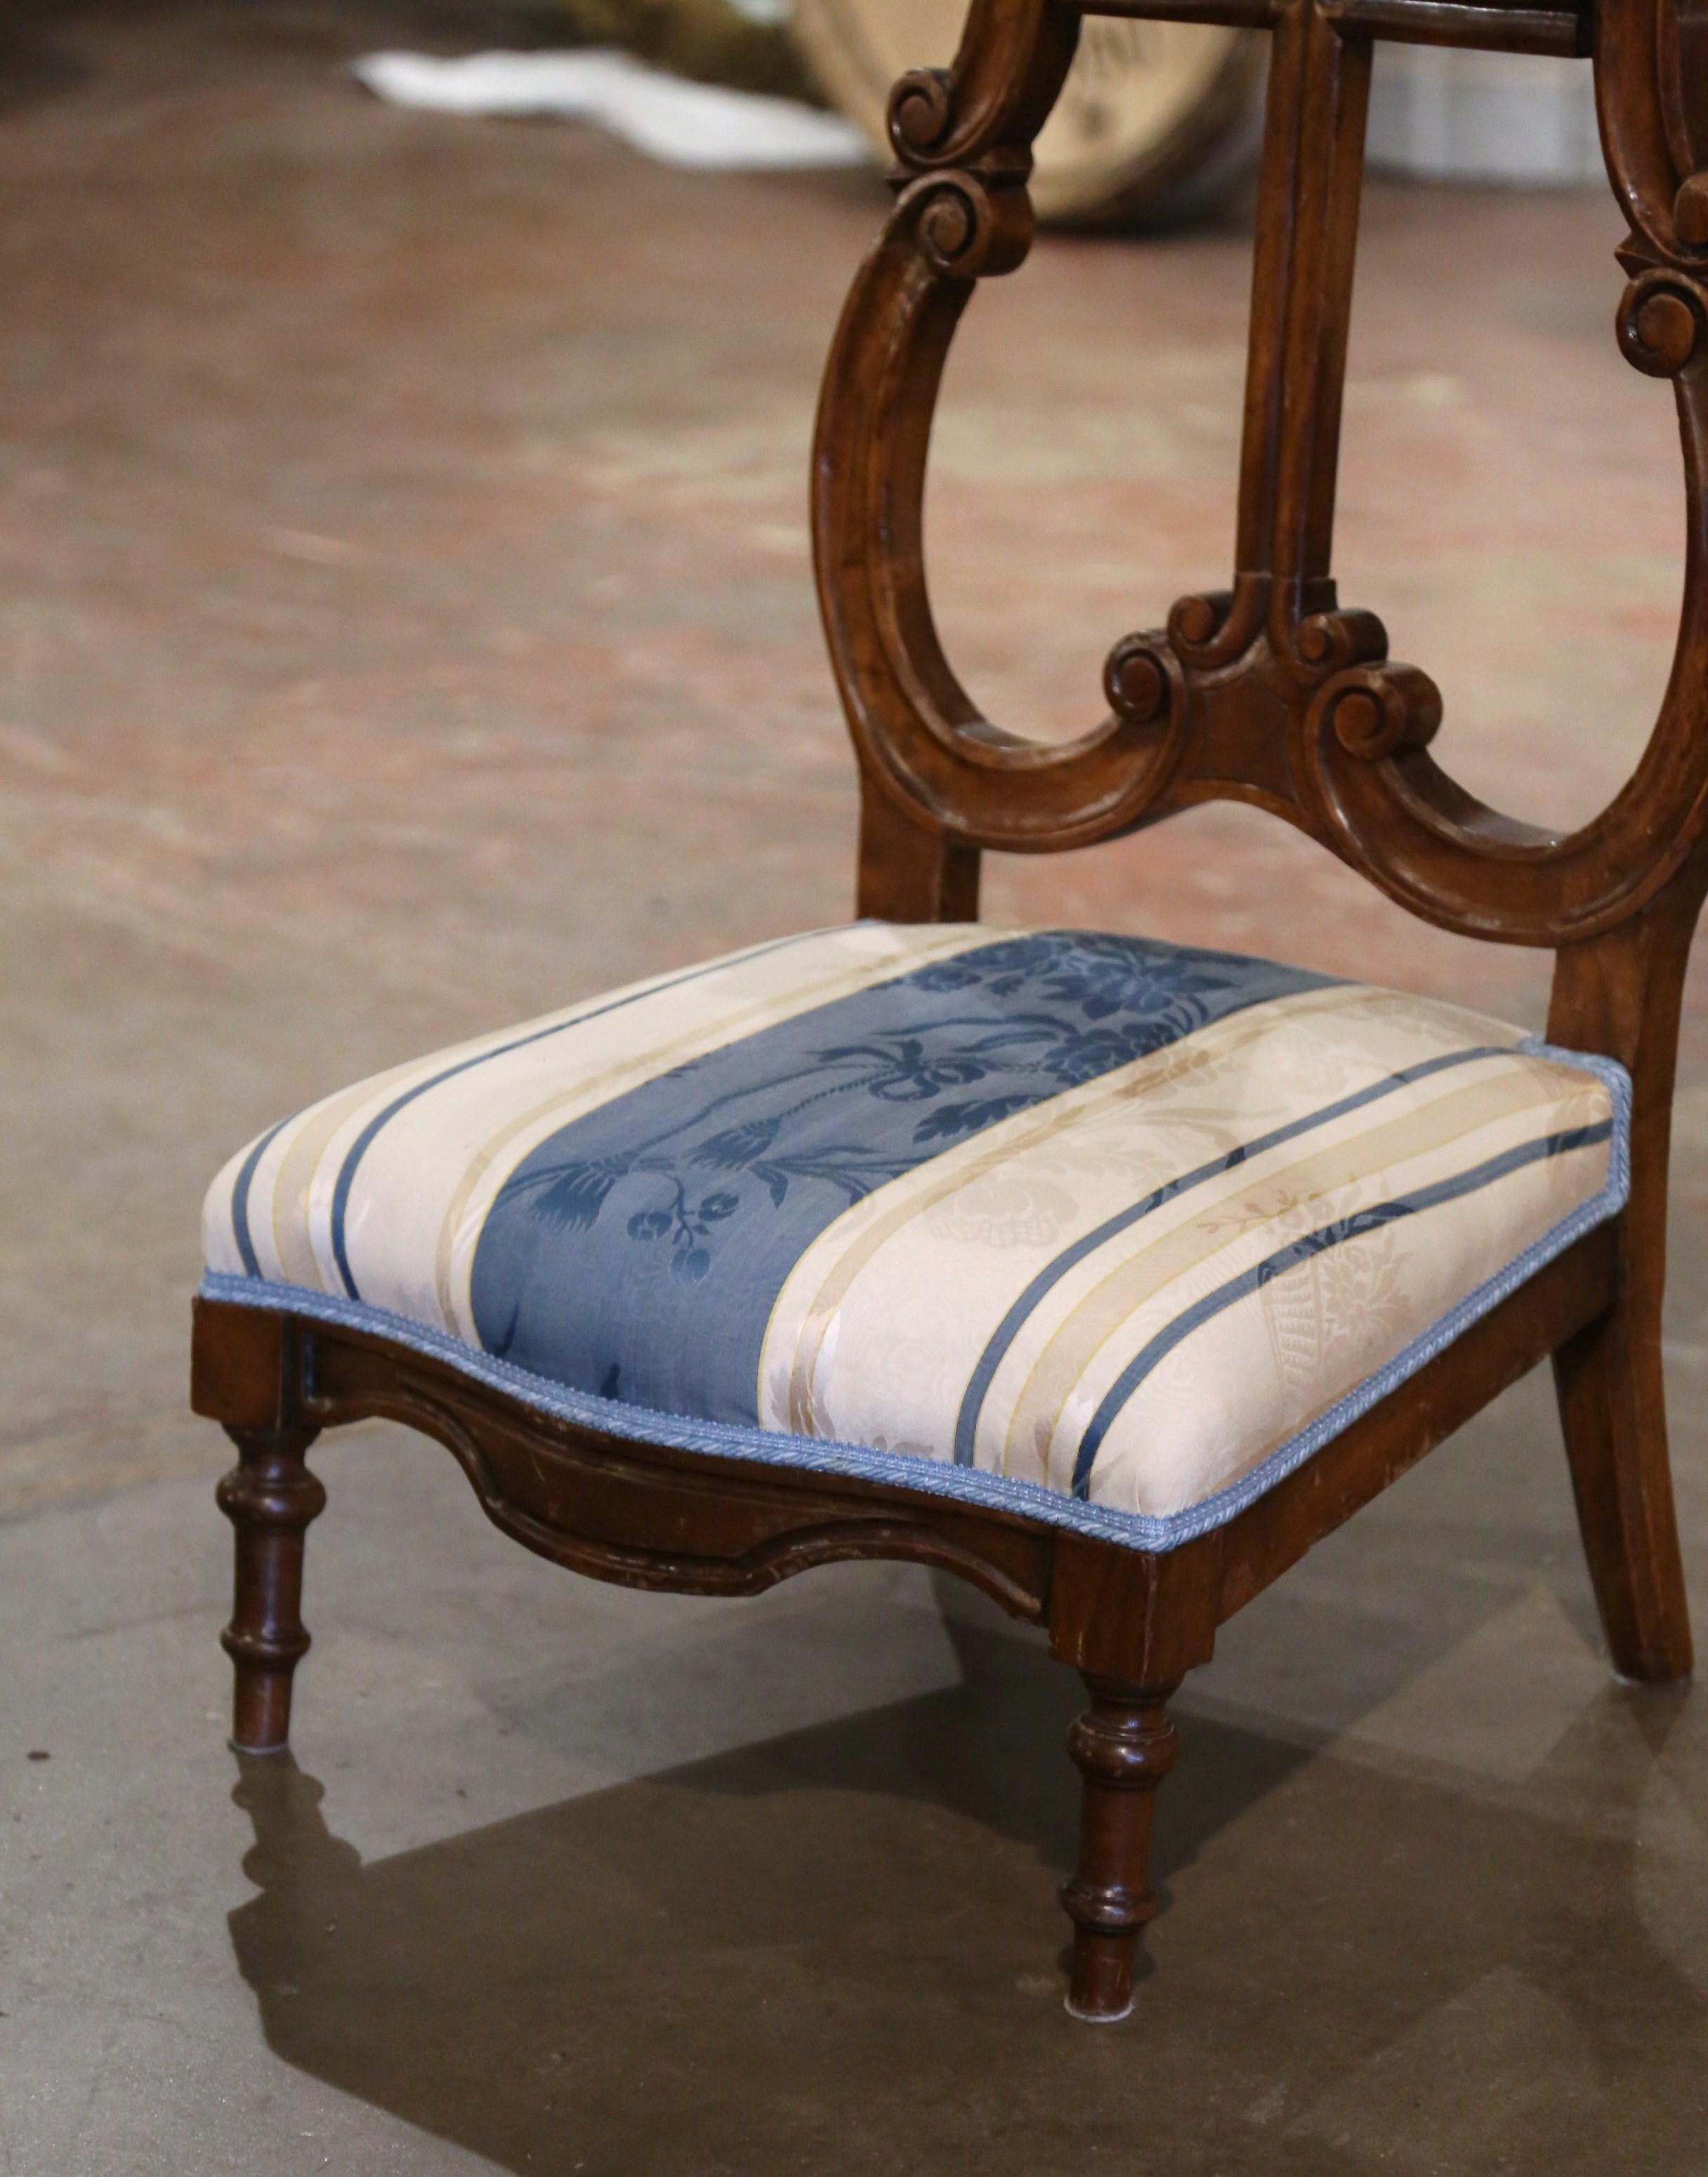 Placez cette élégante chaise de prière antique dans une chambre à coucher pour vos dévotions quotidiennes. Fabriqué en France, vers 1960, cet agenouilloir traditionnel en noyer repose sur des pieds tournés au-dessus d'un tablier en bombe festonné.